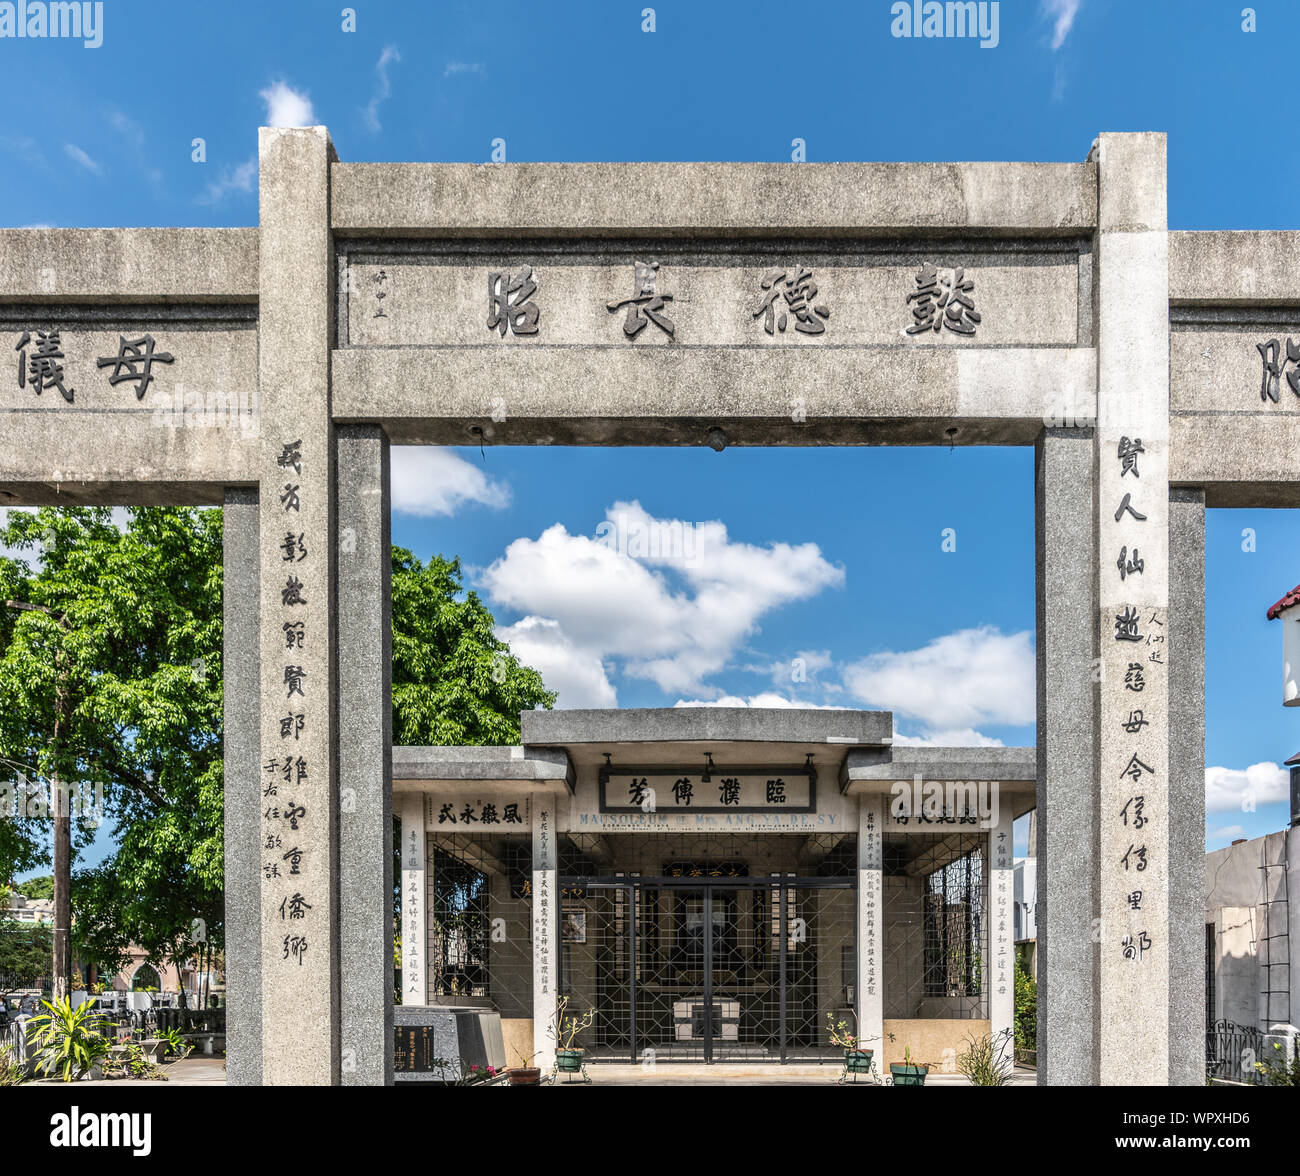 Manila, Philippinen - 5. März 2019: Chinesischer Friedhof im Stadtteil Santa Cruz. Mausoleum mit hohem Tor von Frau Ang Ya De Sy in graty Stein und Himmel Stockfoto